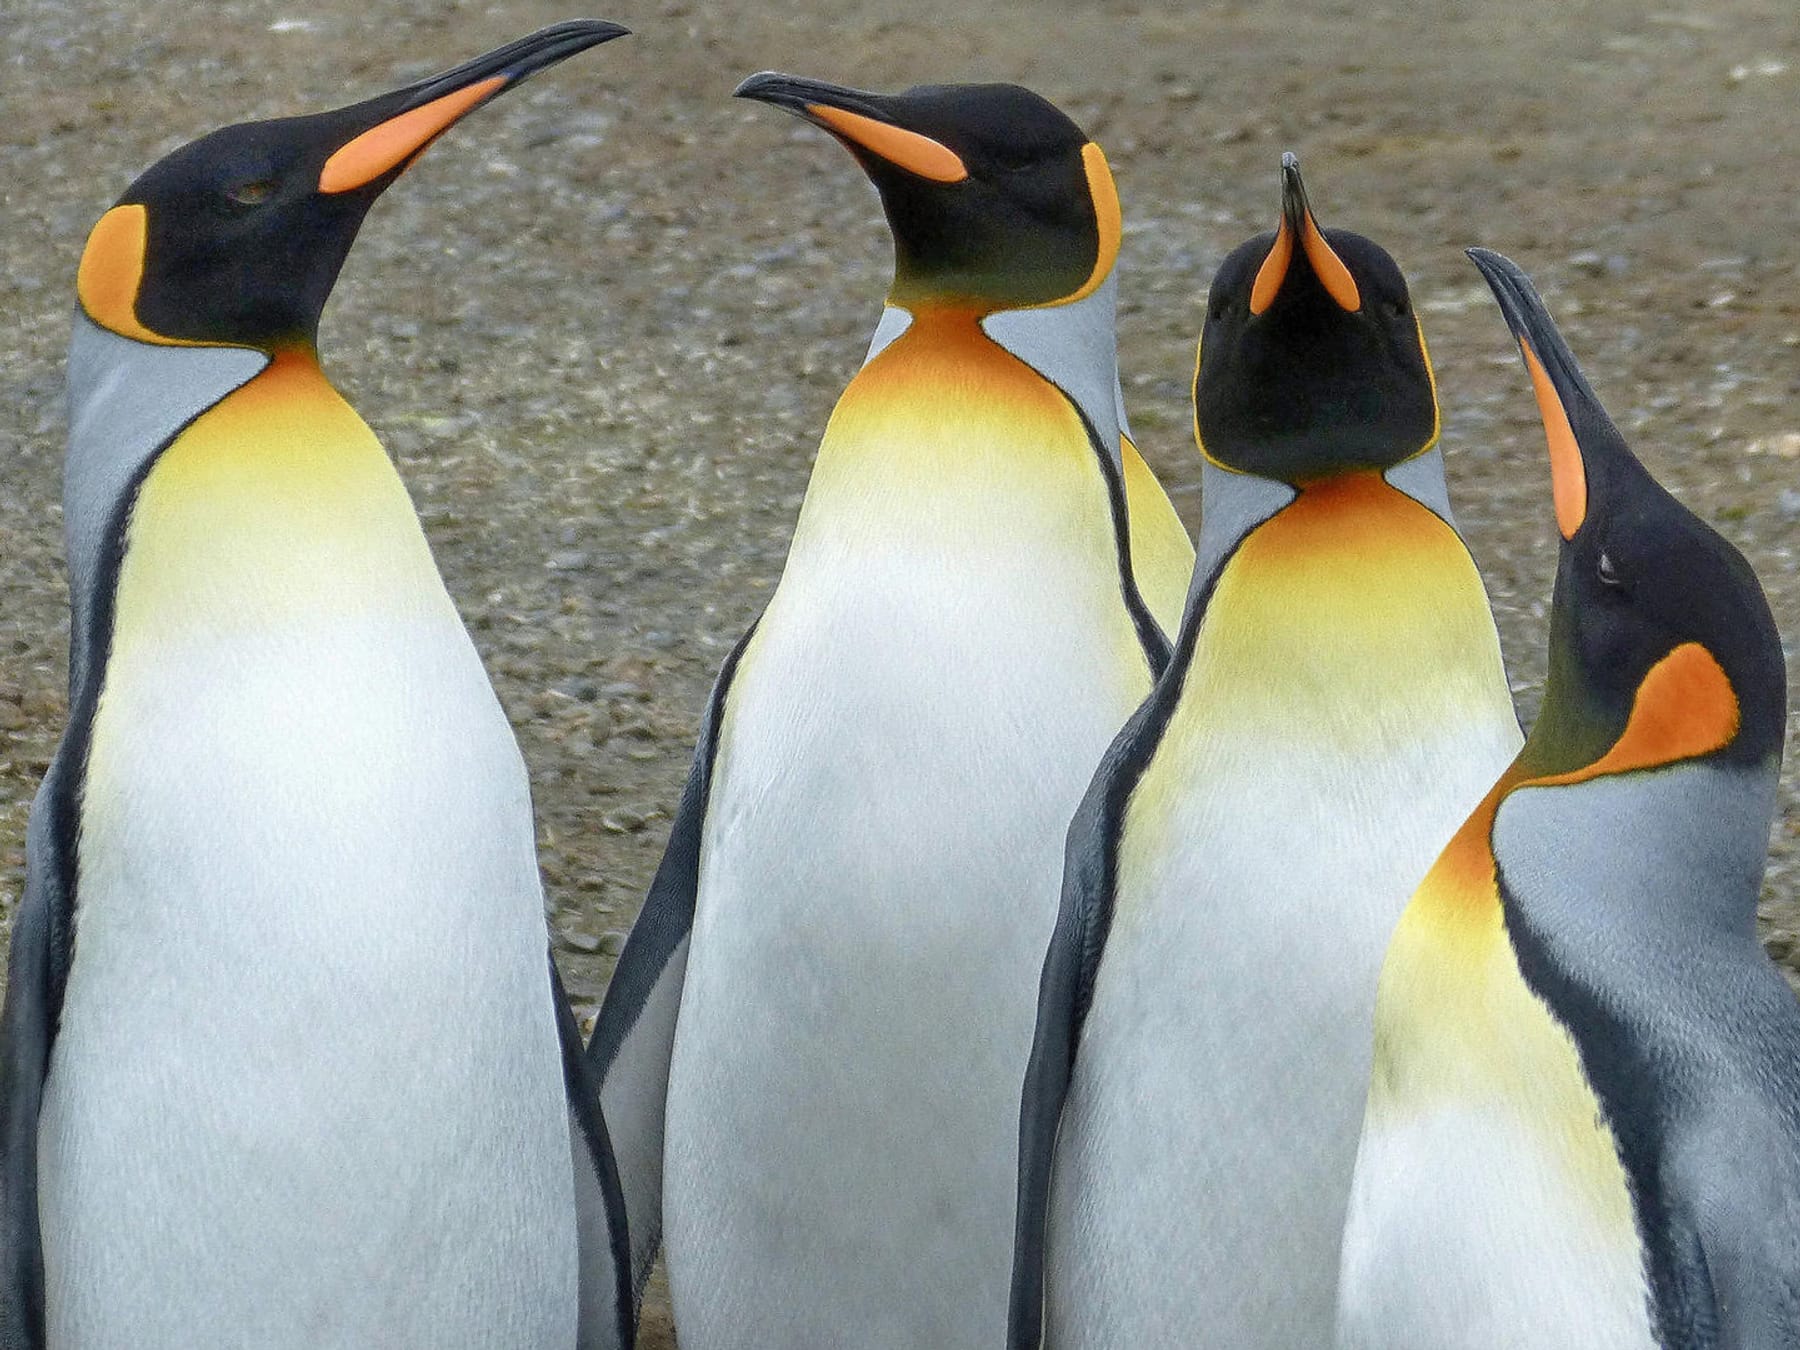 Antarktis: Neue Pinguin-Kolonien entdeckt – mit Hilfe von Kot